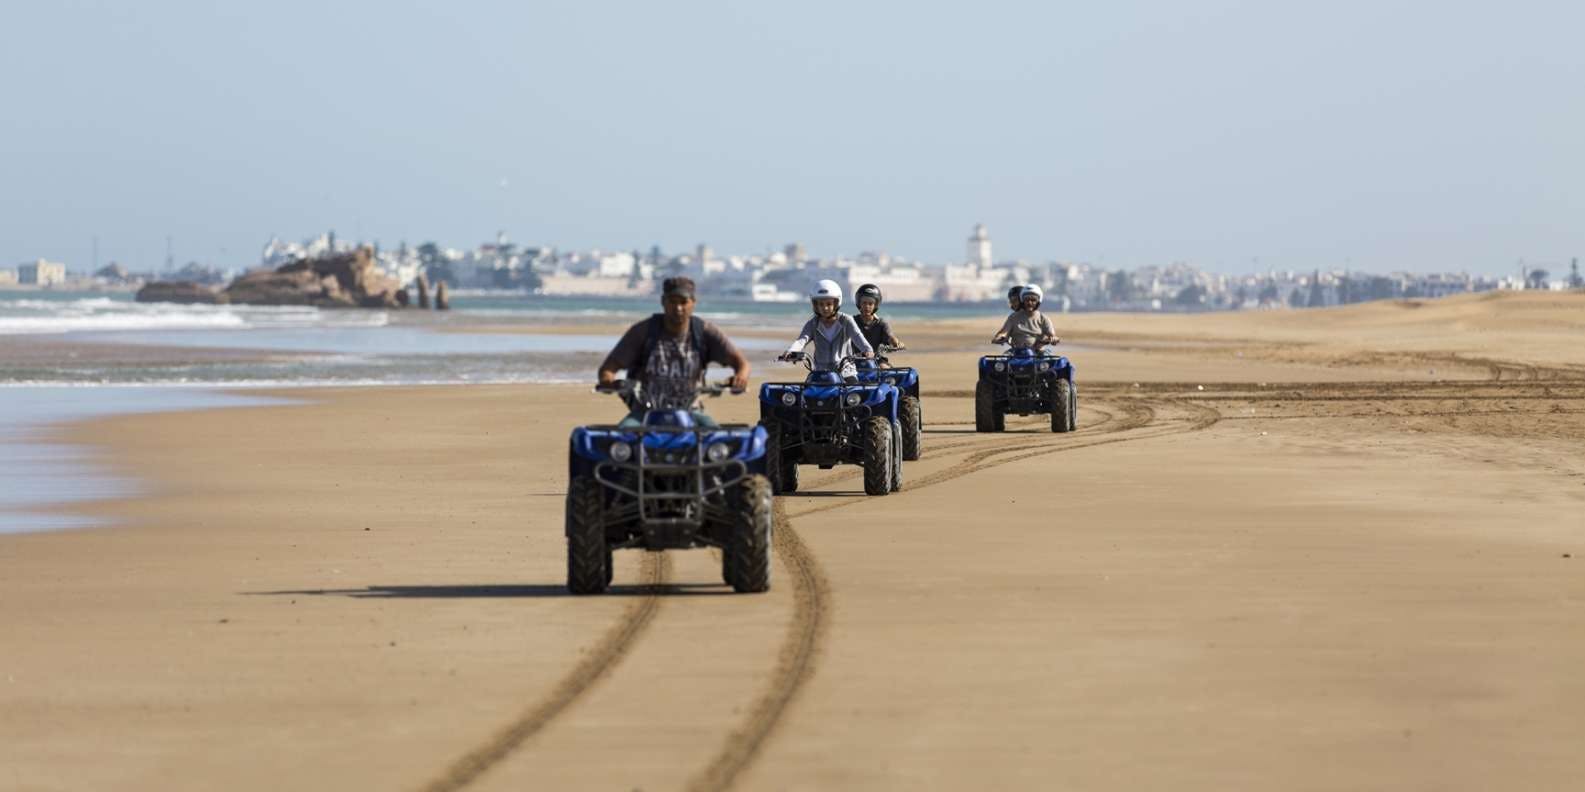 Wycieczka quadem po plaży Essaouira?